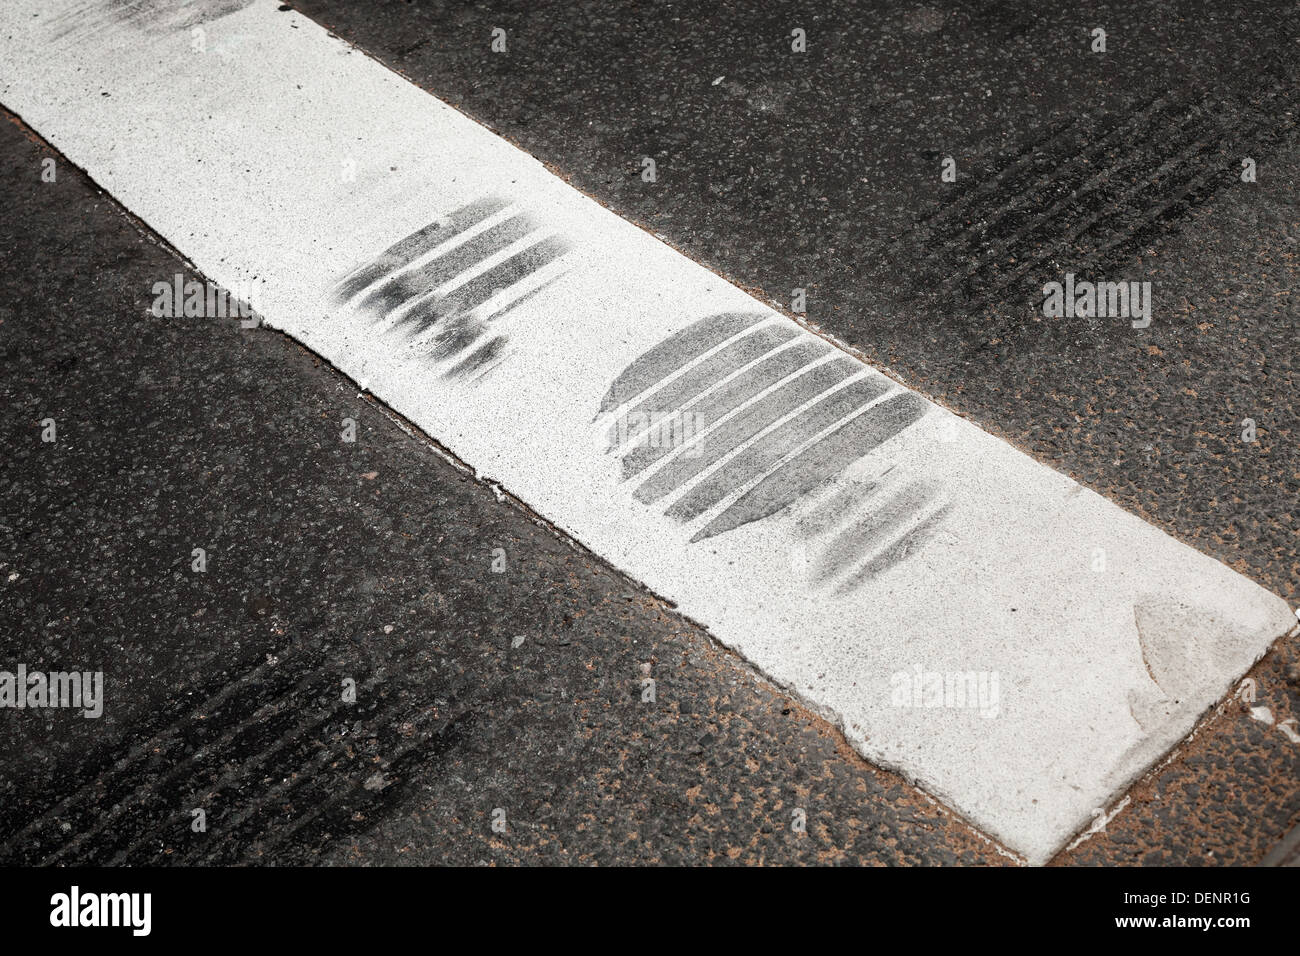 Fragmento de cruce peatonal con banda blanca y los neumáticos de carretera de asfalto Foto de stock